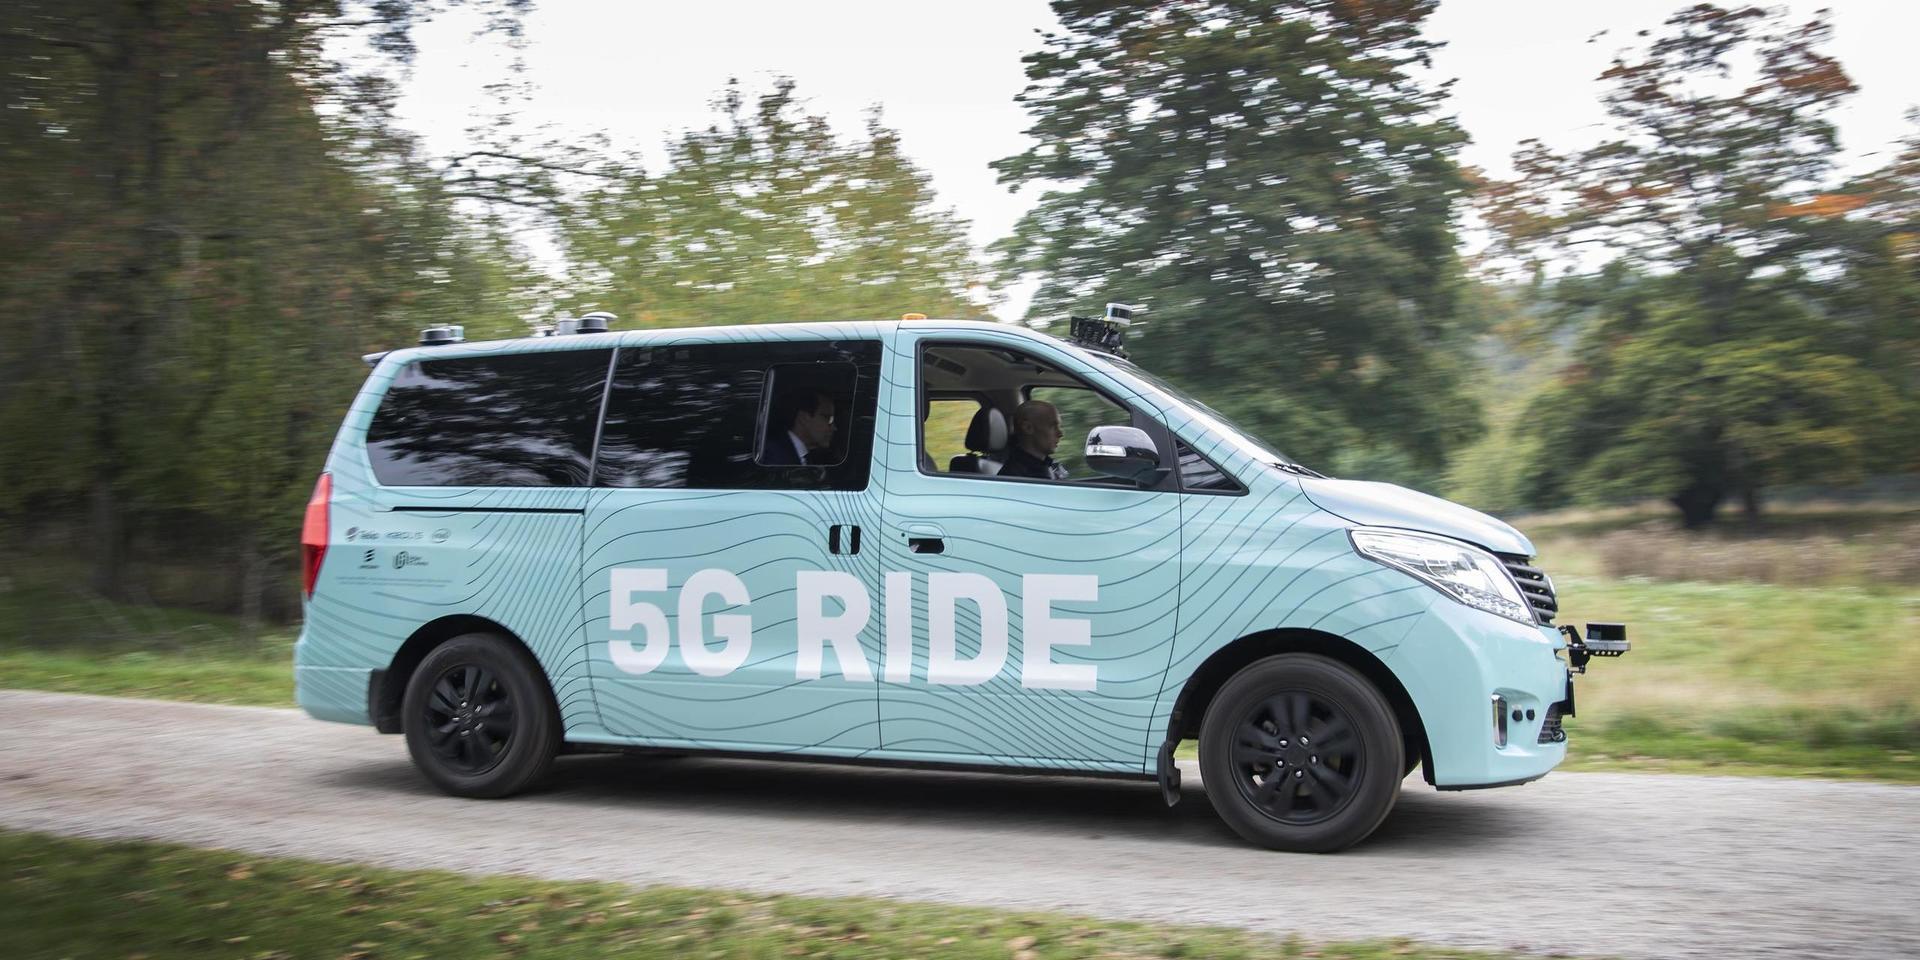 Minibussen är tänkt att demonstrera hur framtidens kollektivtrafik kan se ut med hjälp av 5G.